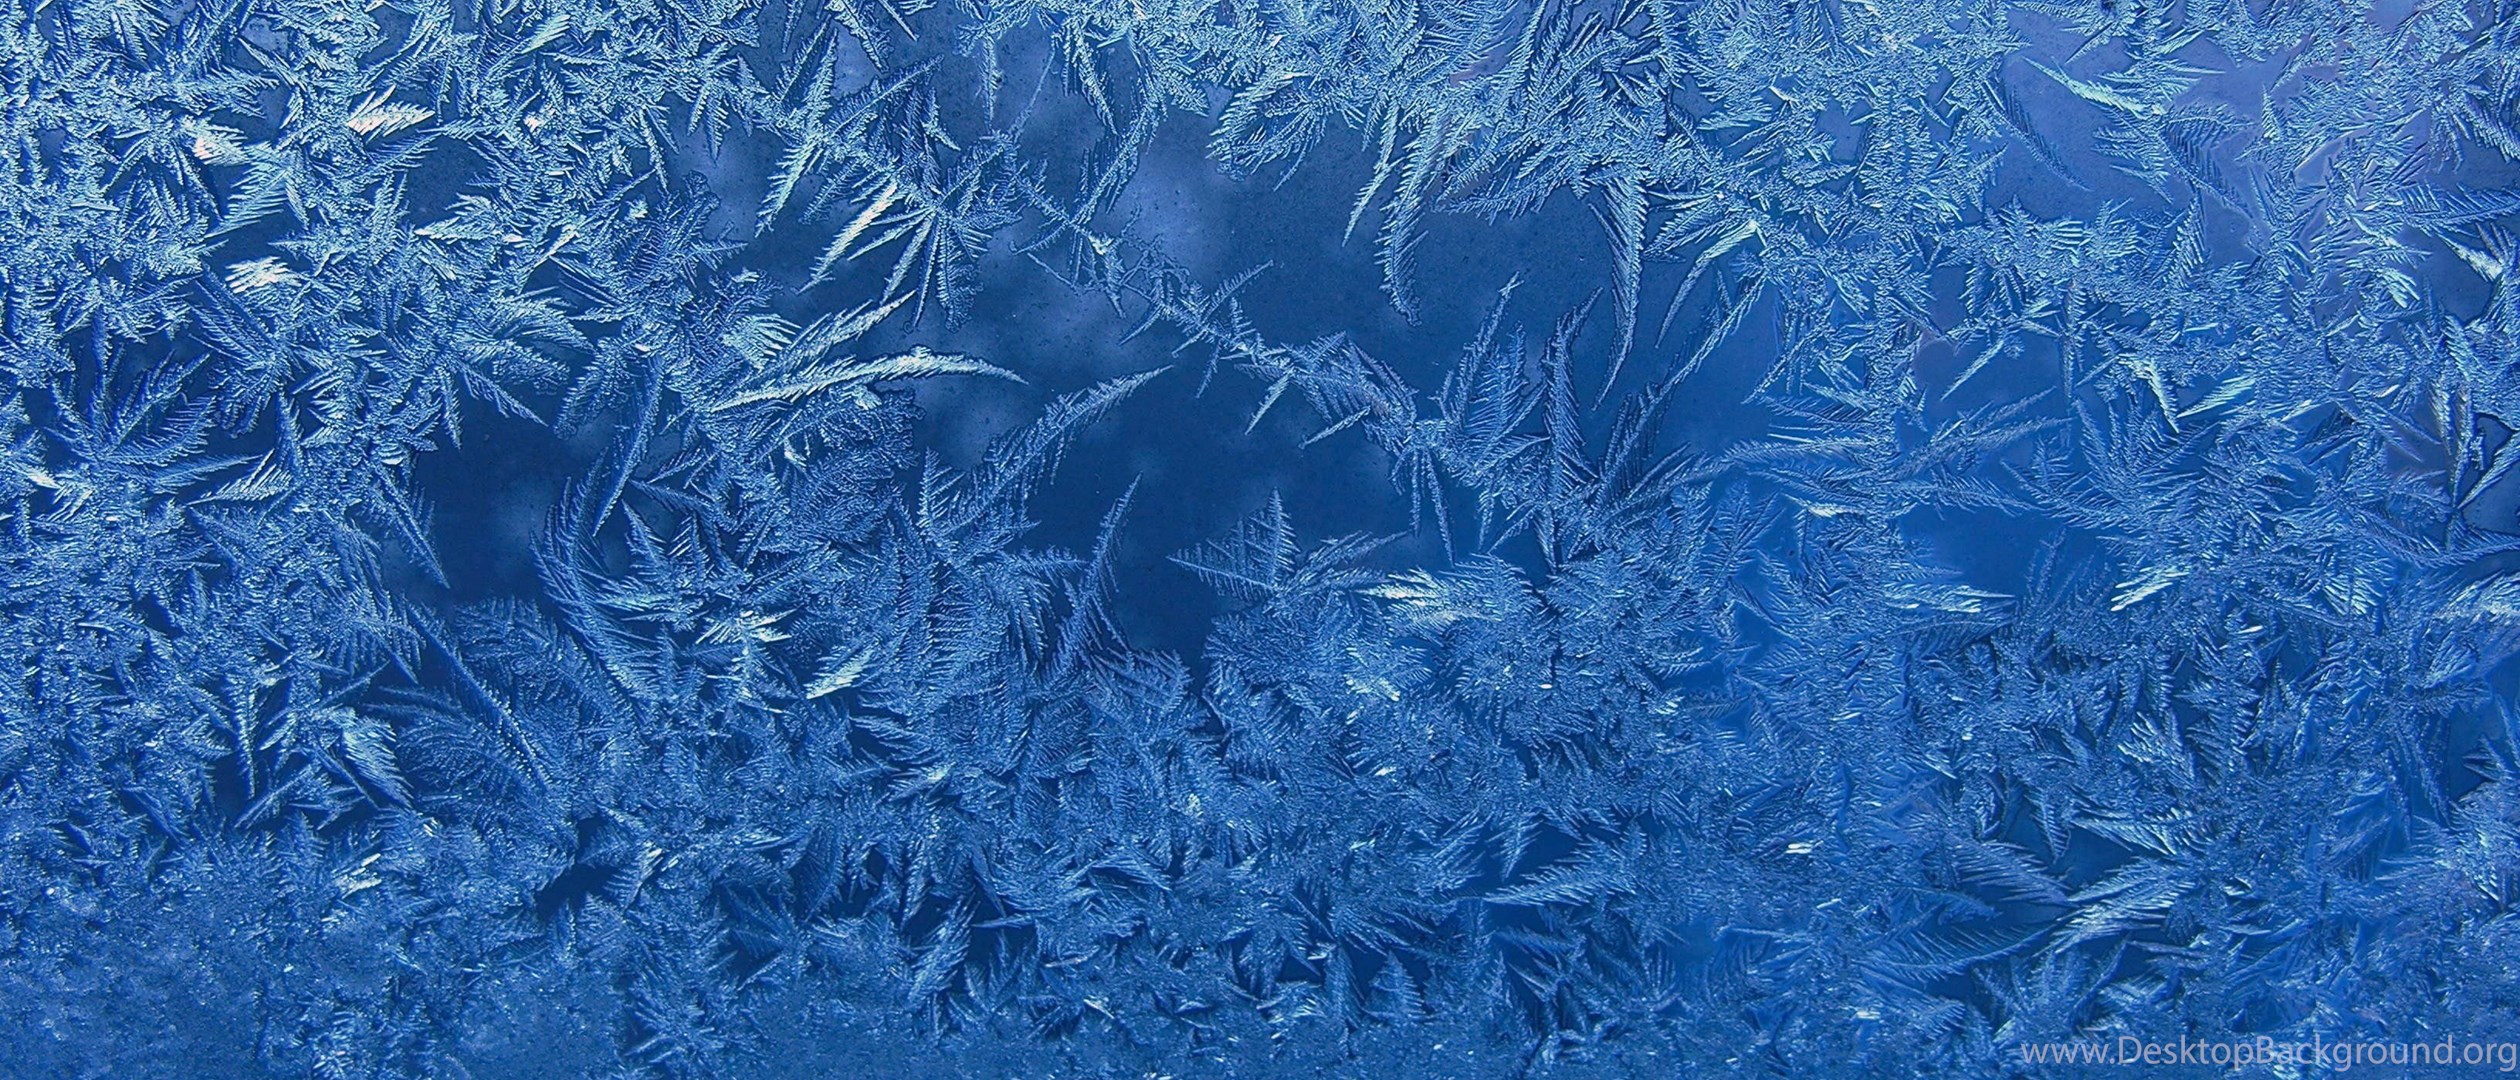 Эффект заморозки. Текстура льда. Замерзшее стекло. Фактура льда. Морозные узоры на стекле.